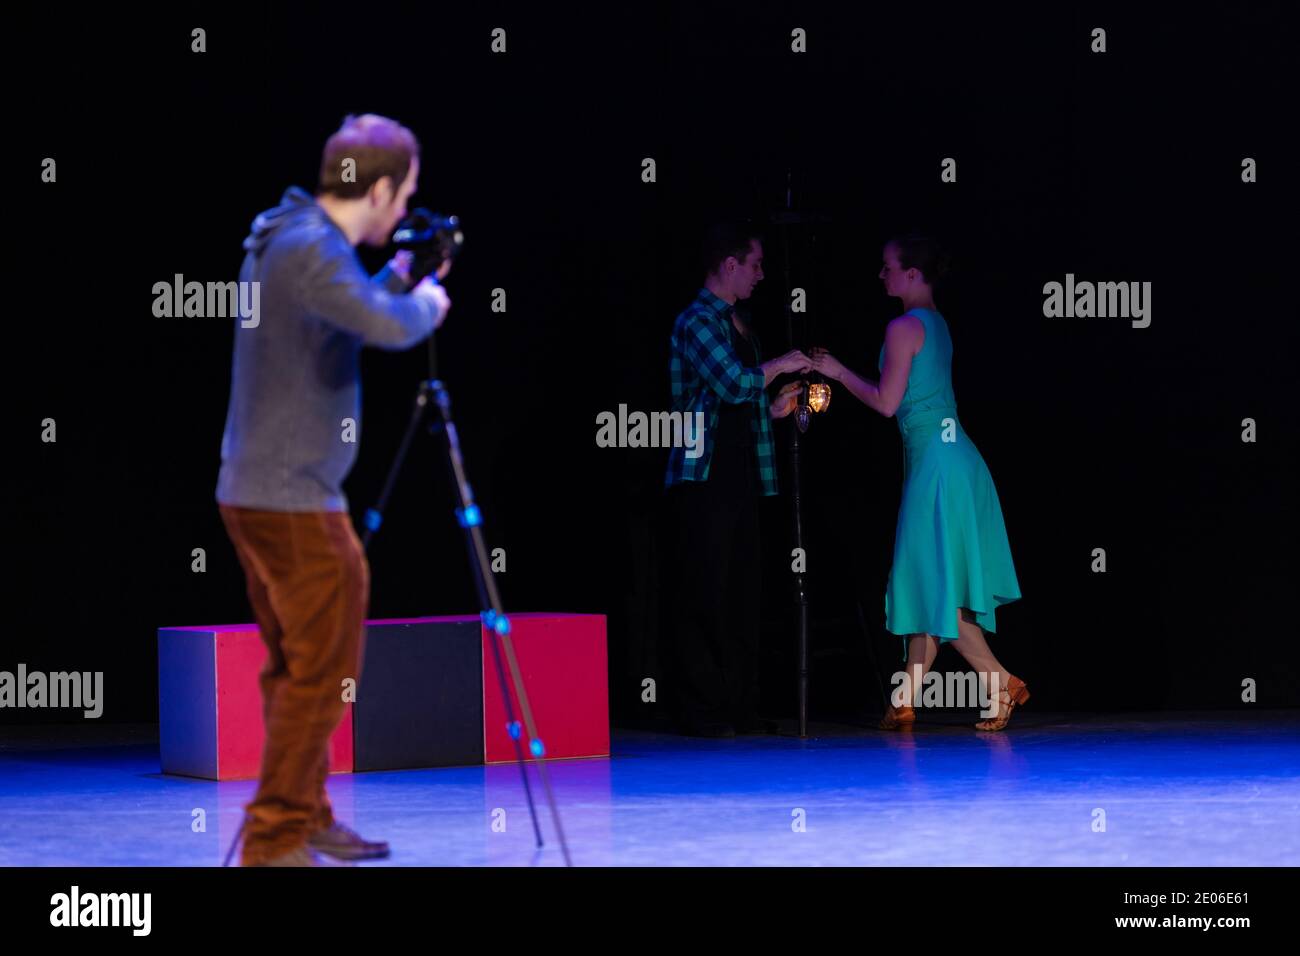 Une paire de danseurs un homme et une femme dansent sur scène et un vidéaste enregistre un clip vidéo et des reportages. Banque D'Images